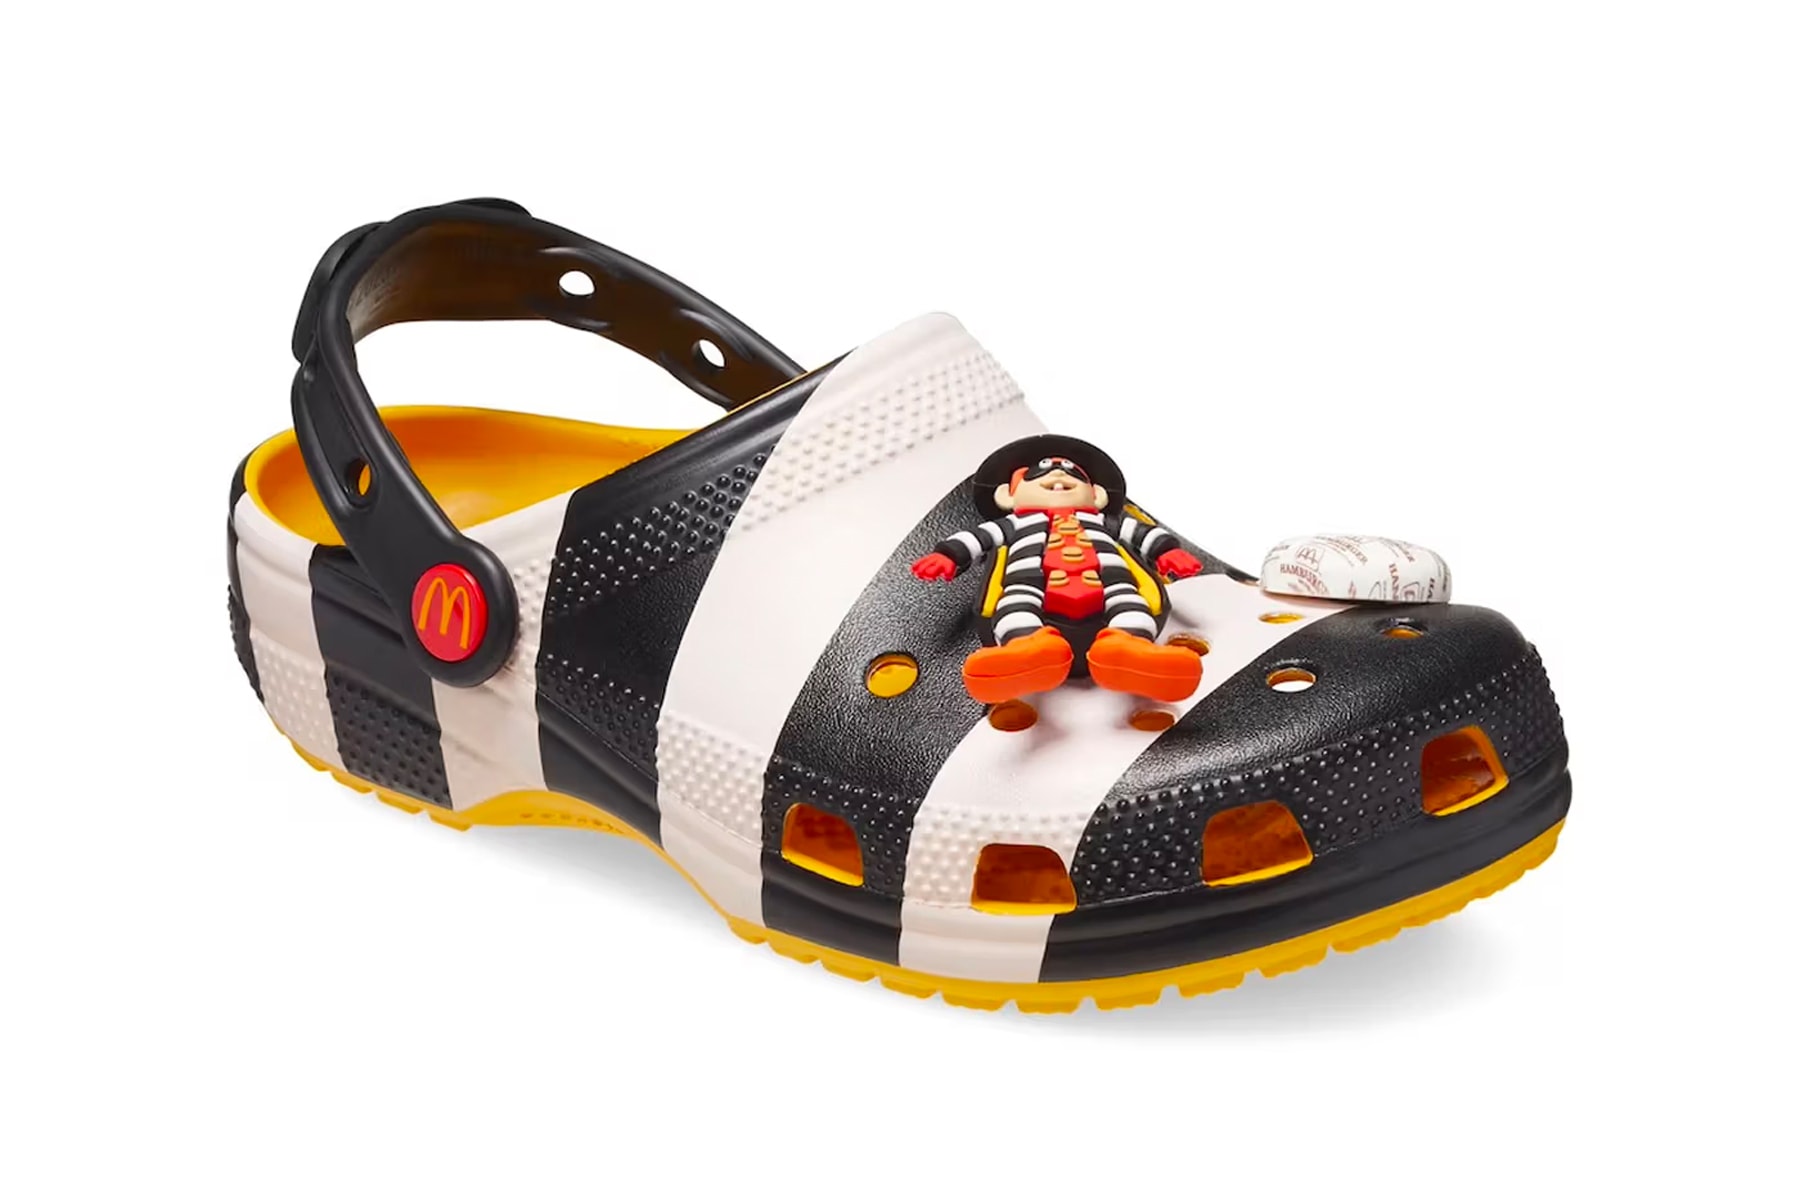 Crocs x McDonald's 全新聯名鞋款正式登場